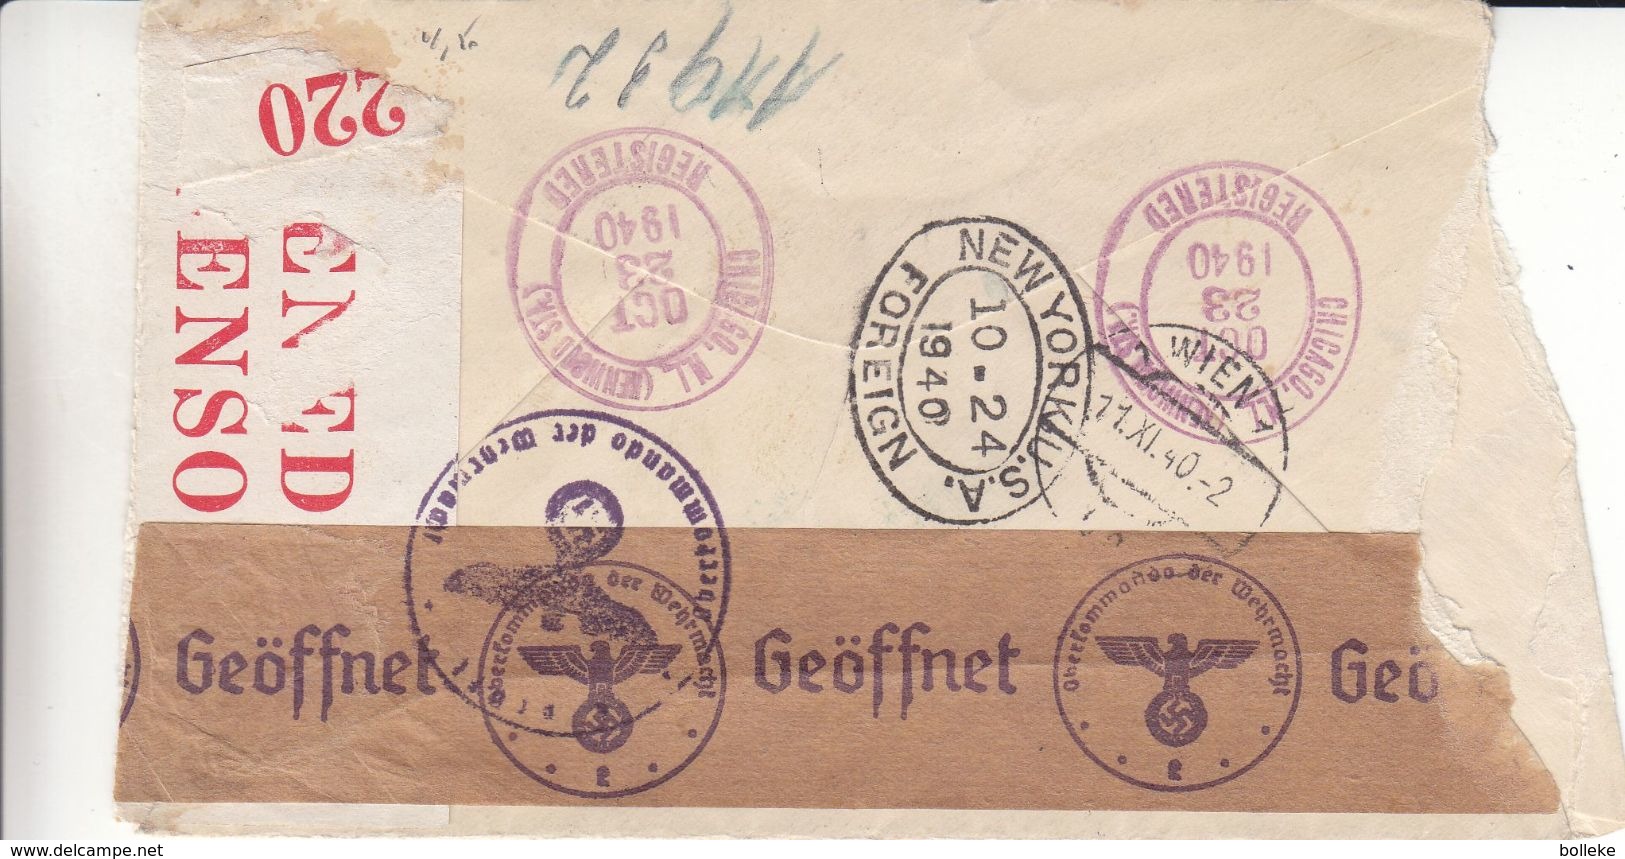 Etats Unis - Lettre Recom De 1940 - Oblit Chicago - Exp Vers Vienne - Griffe Trans Atlantic Air Mail - Avec 2 Censures - Lettres & Documents